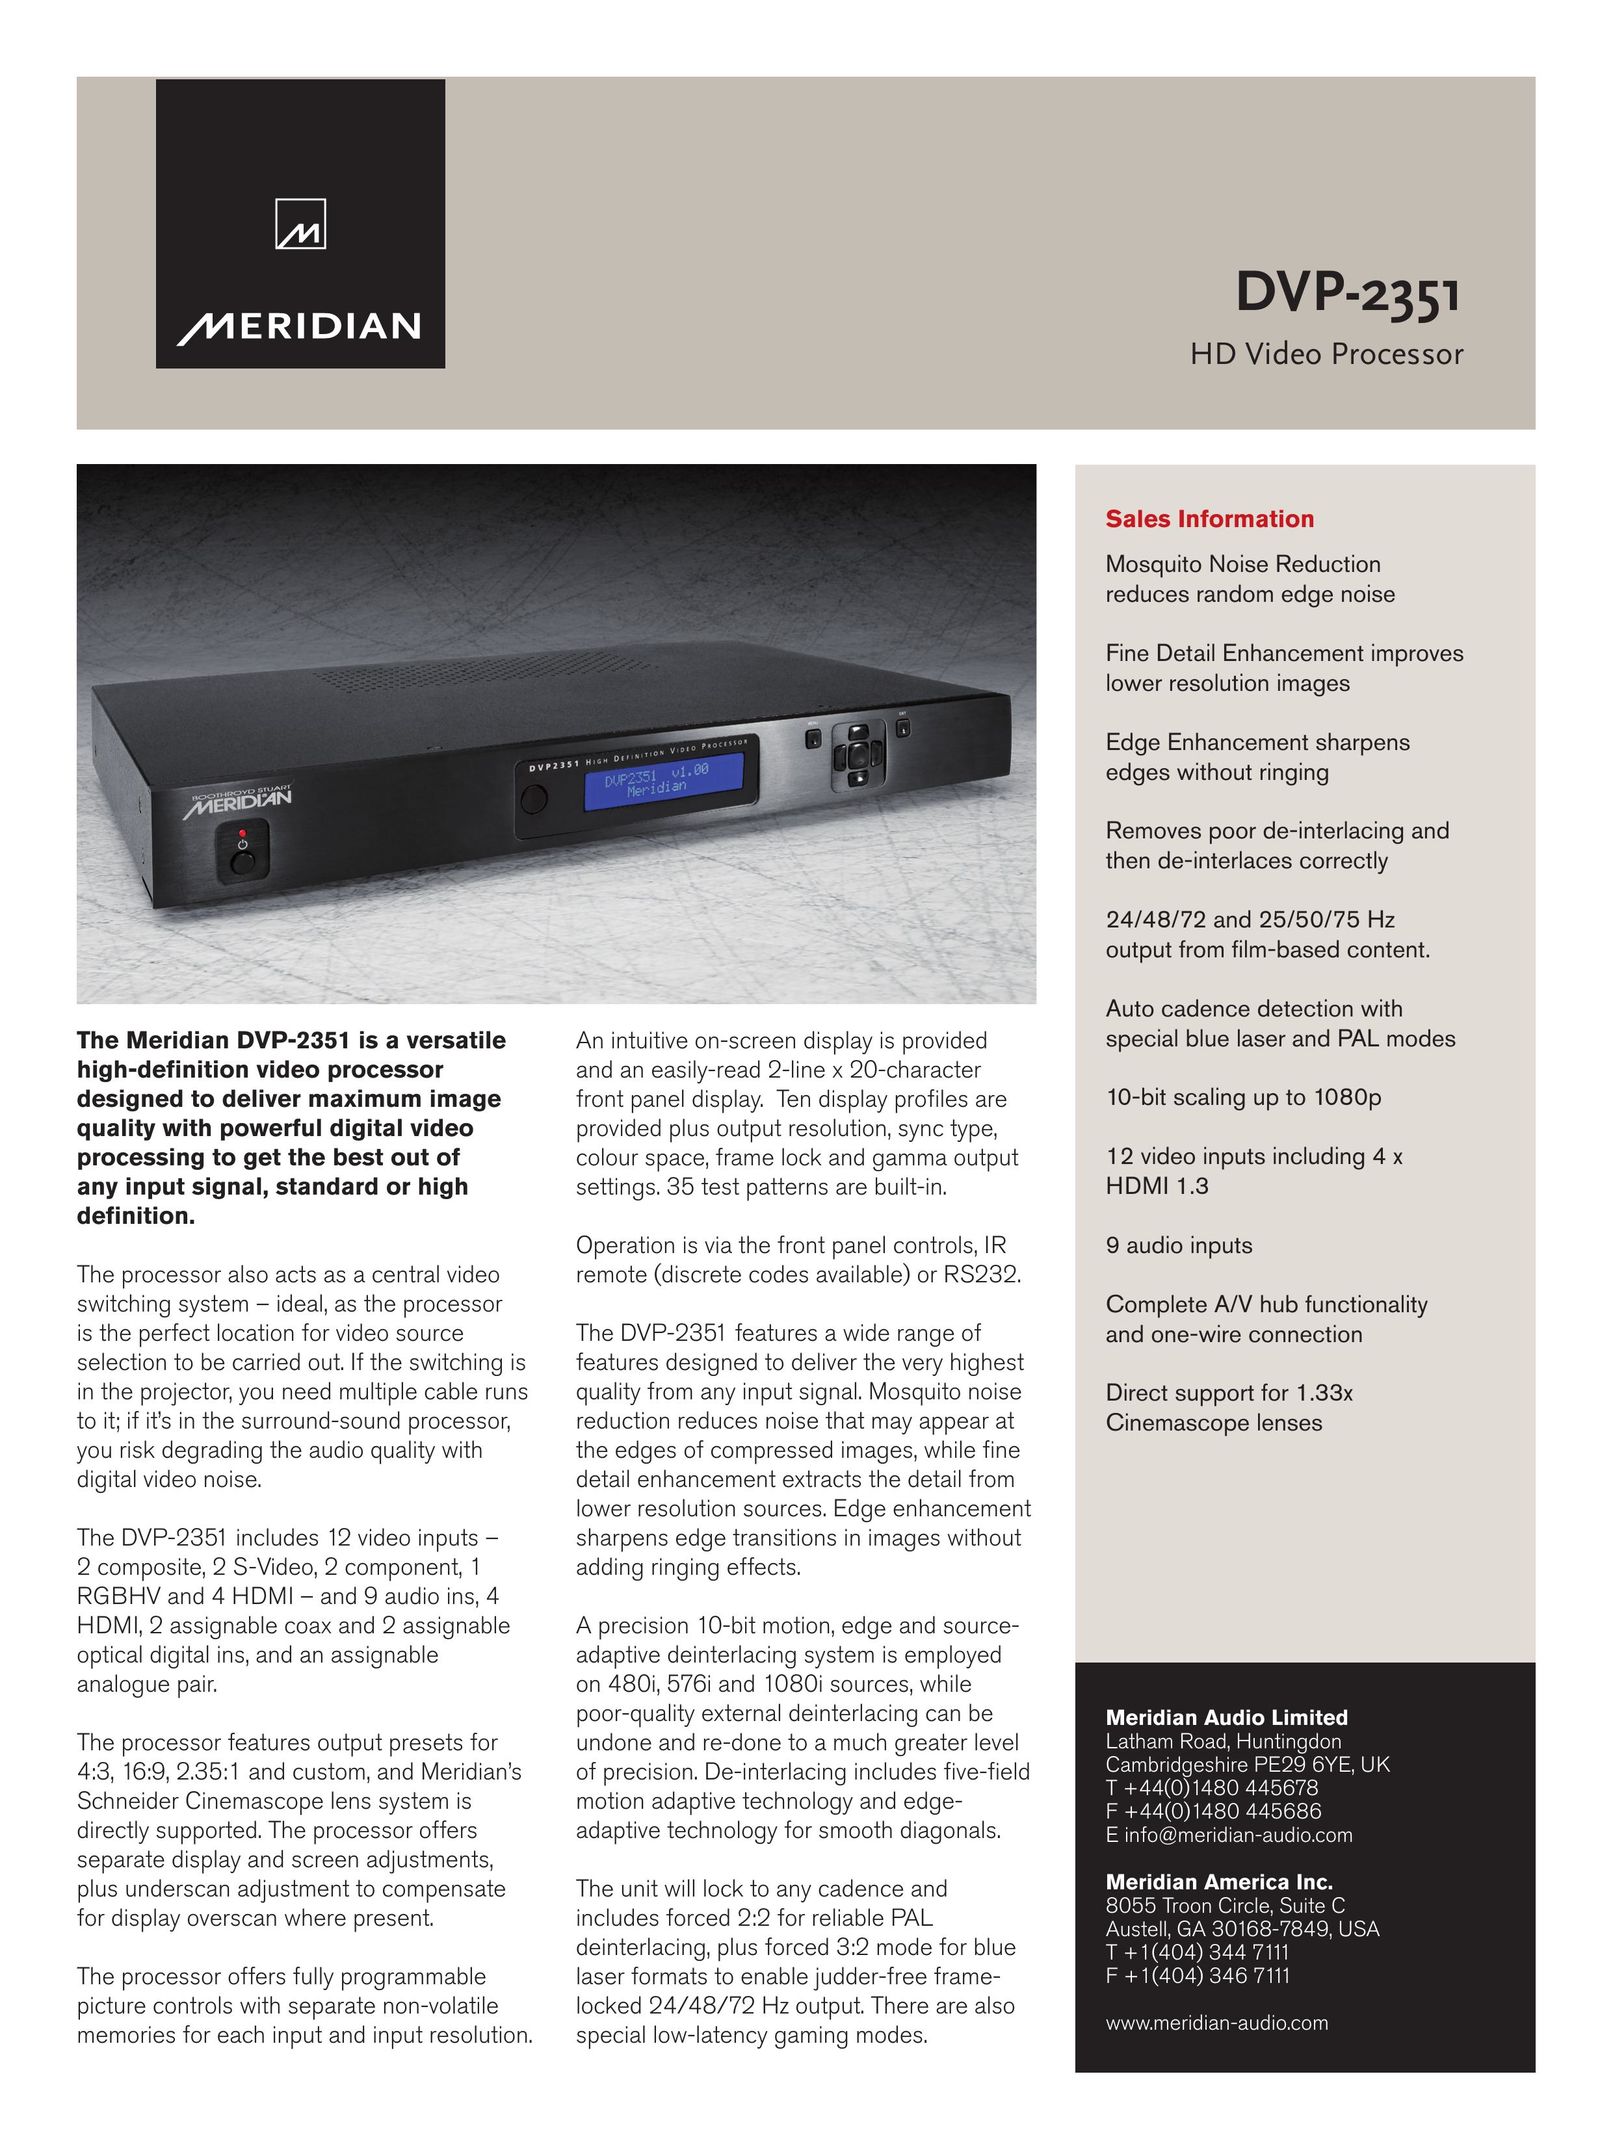 Meridian America DVP-2351 DVR User Manual